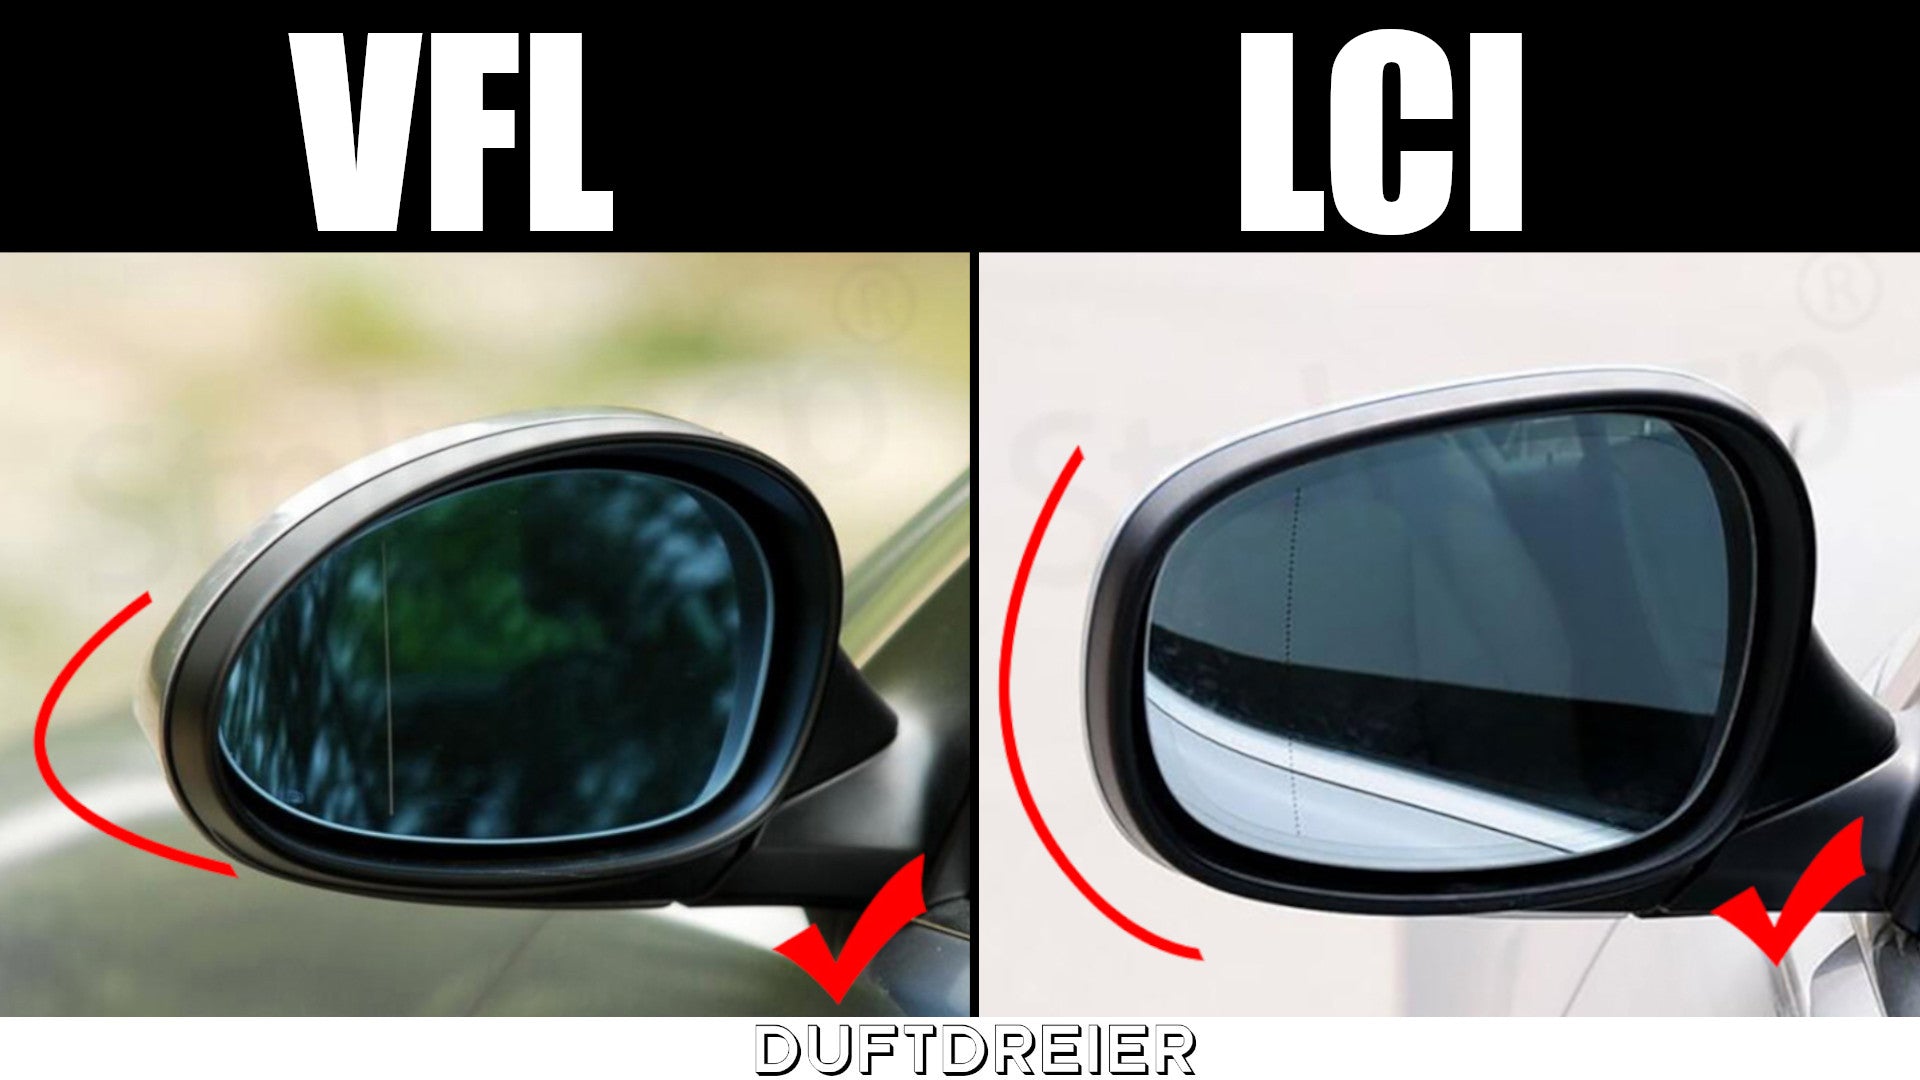 Spiegelkappen Vergleich VFL und LCI